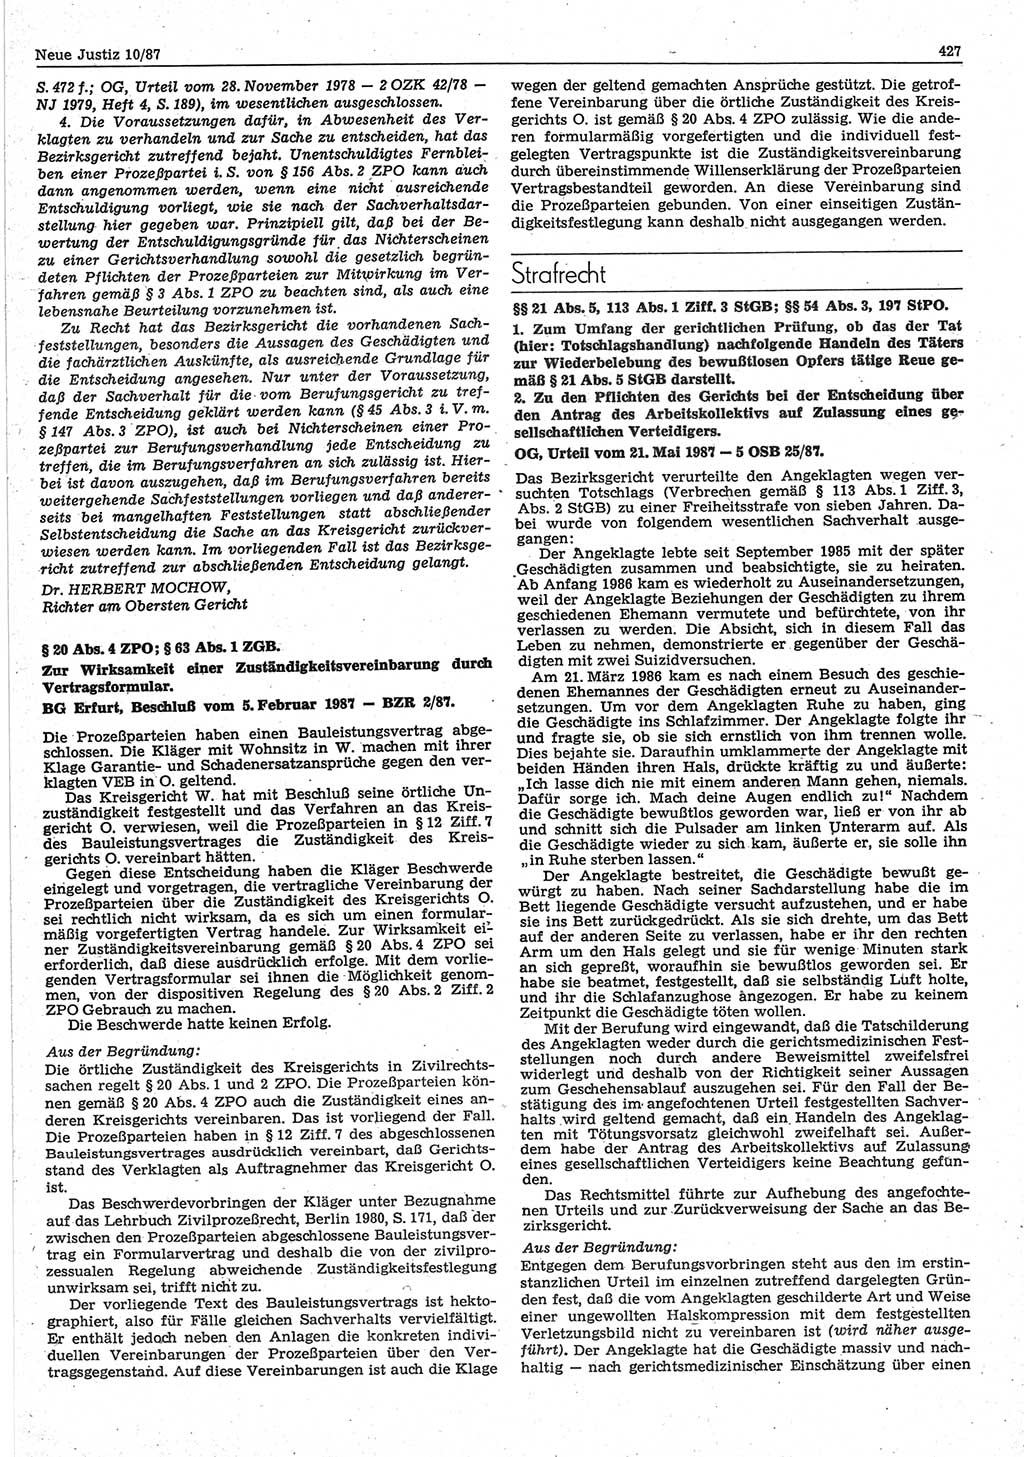 Neue Justiz (NJ), Zeitschrift für sozialistisches Recht und Gesetzlichkeit [Deutsche Demokratische Republik (DDR)], 41. Jahrgang 1987, Seite 427 (NJ DDR 1987, S. 427)